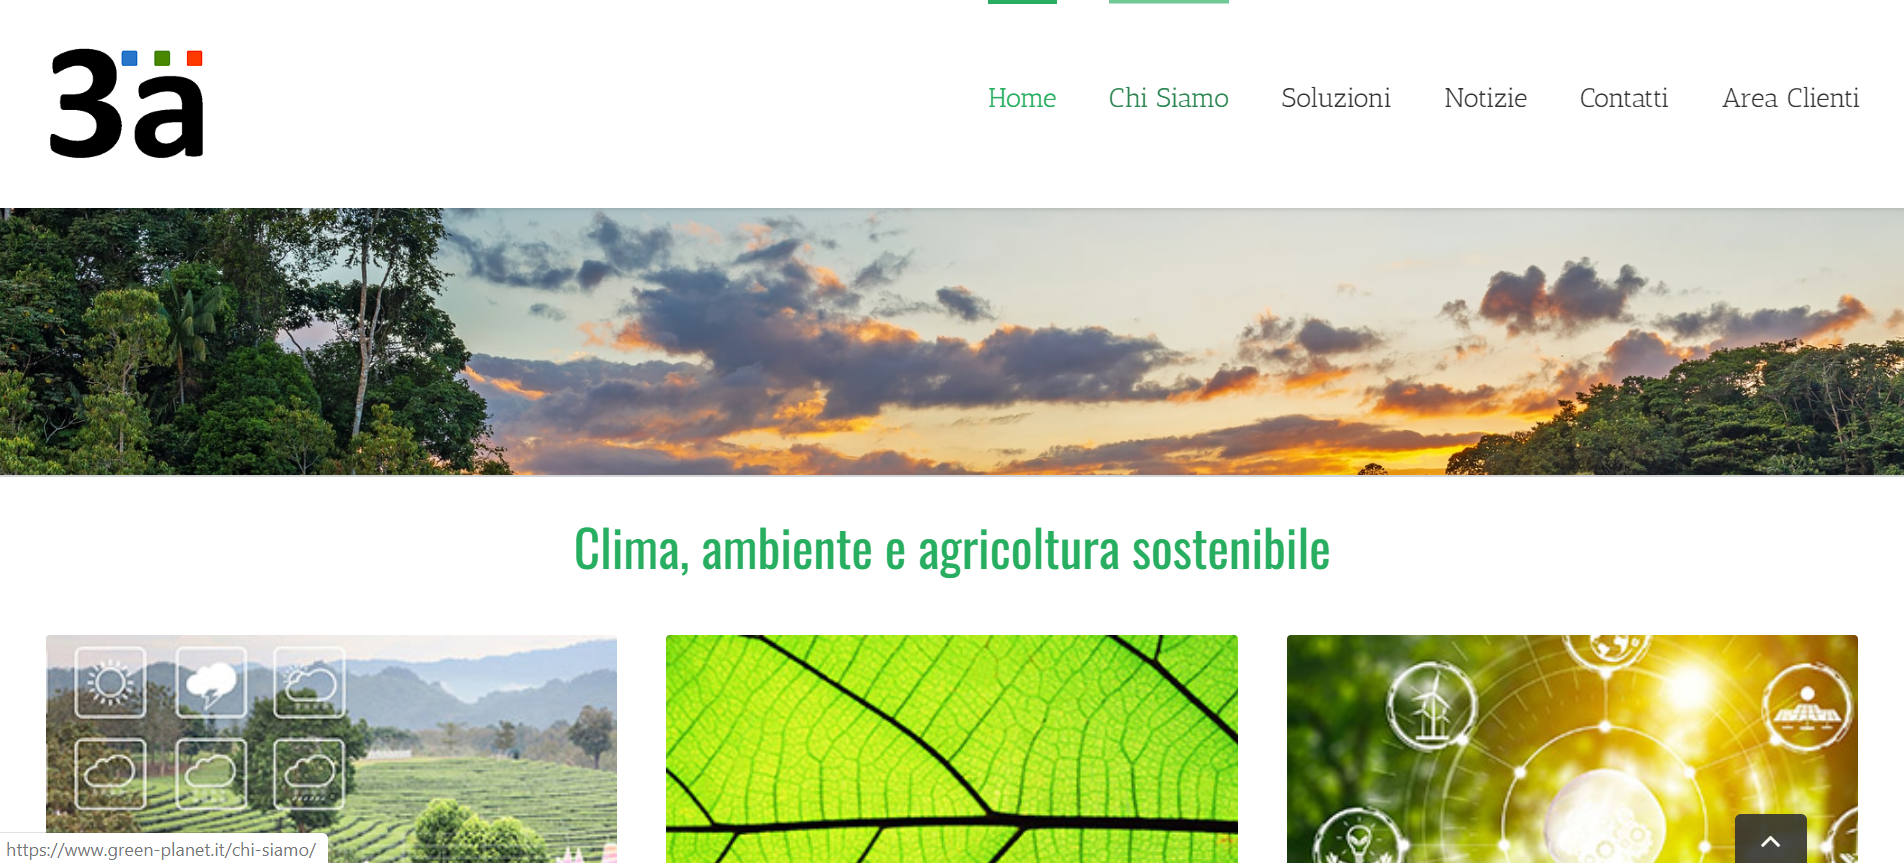 Sostenibilità e Smart Agriculture: nuova veste grafica per 3A